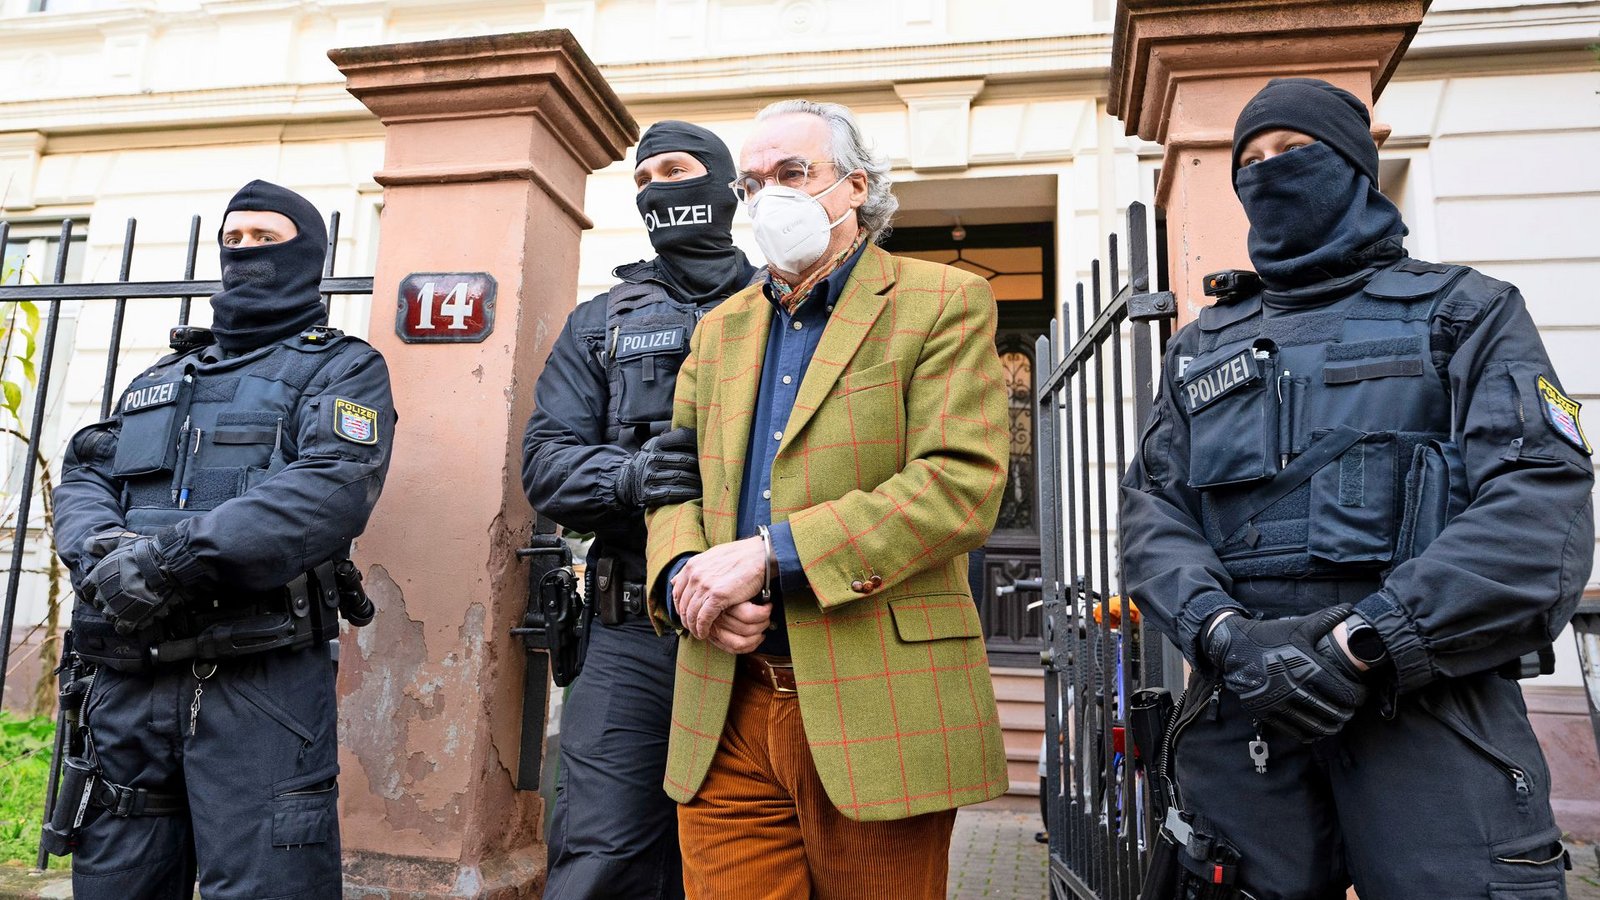 Am 7. Dezember 2022 wurde Heinrich XIII. Prinz Reuß in seinem Haus in Frankfurt am Main verhaftet. Seitdem sitzt er in Untersuchungshaft.Foto: dpa/Boris Roessler